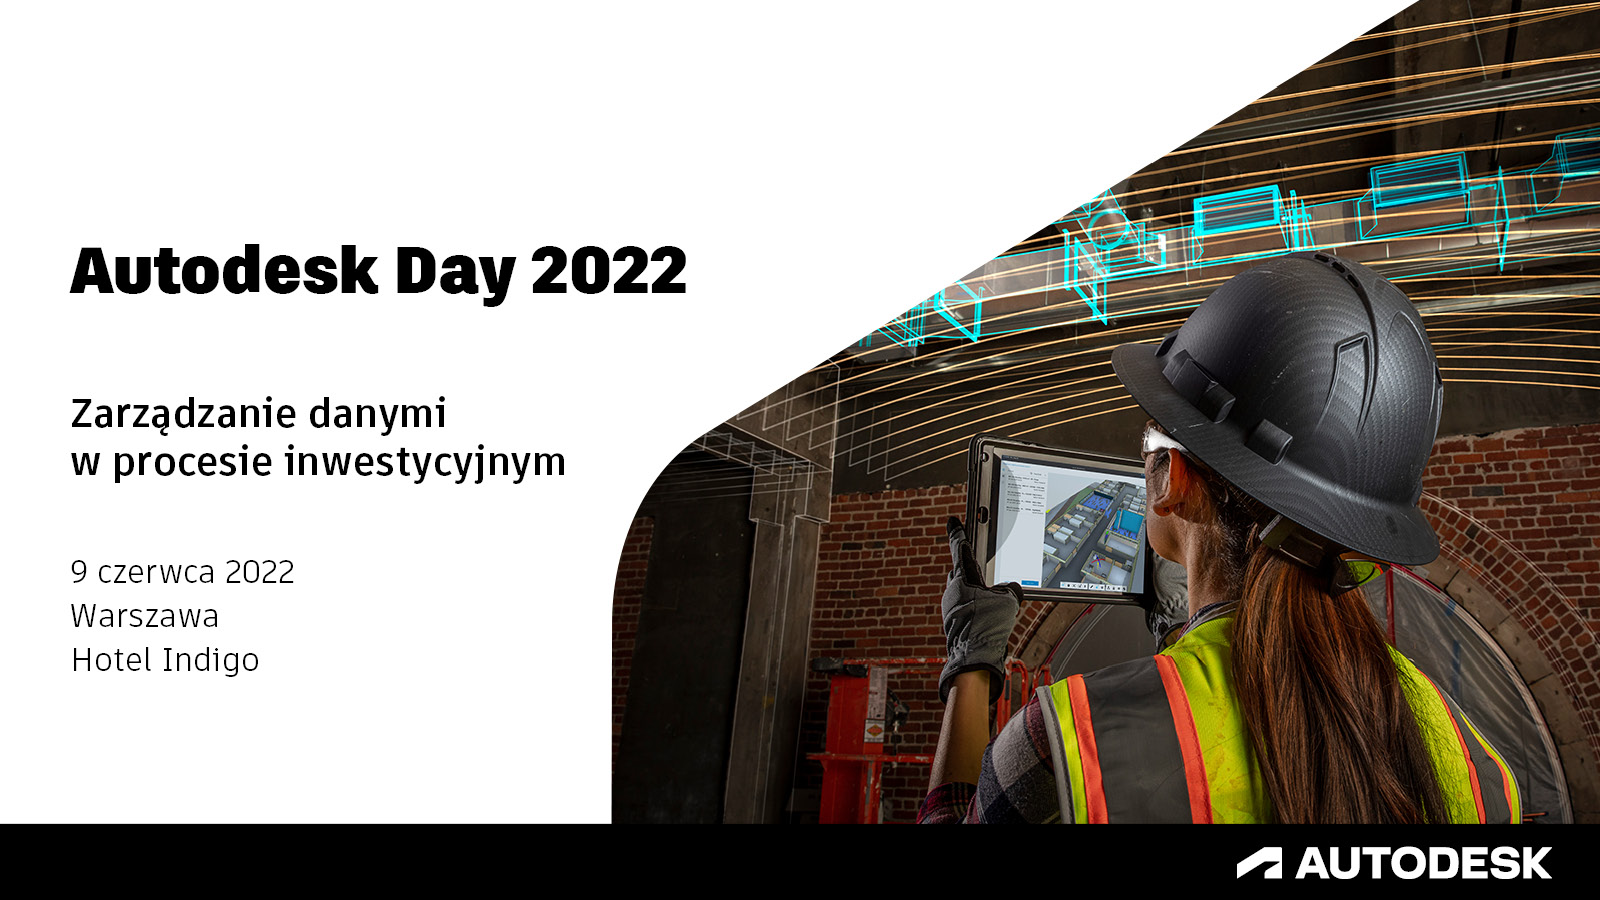 Autodesk DAY 2022: Zarządzanie danymi w procesie inwestycyjnym